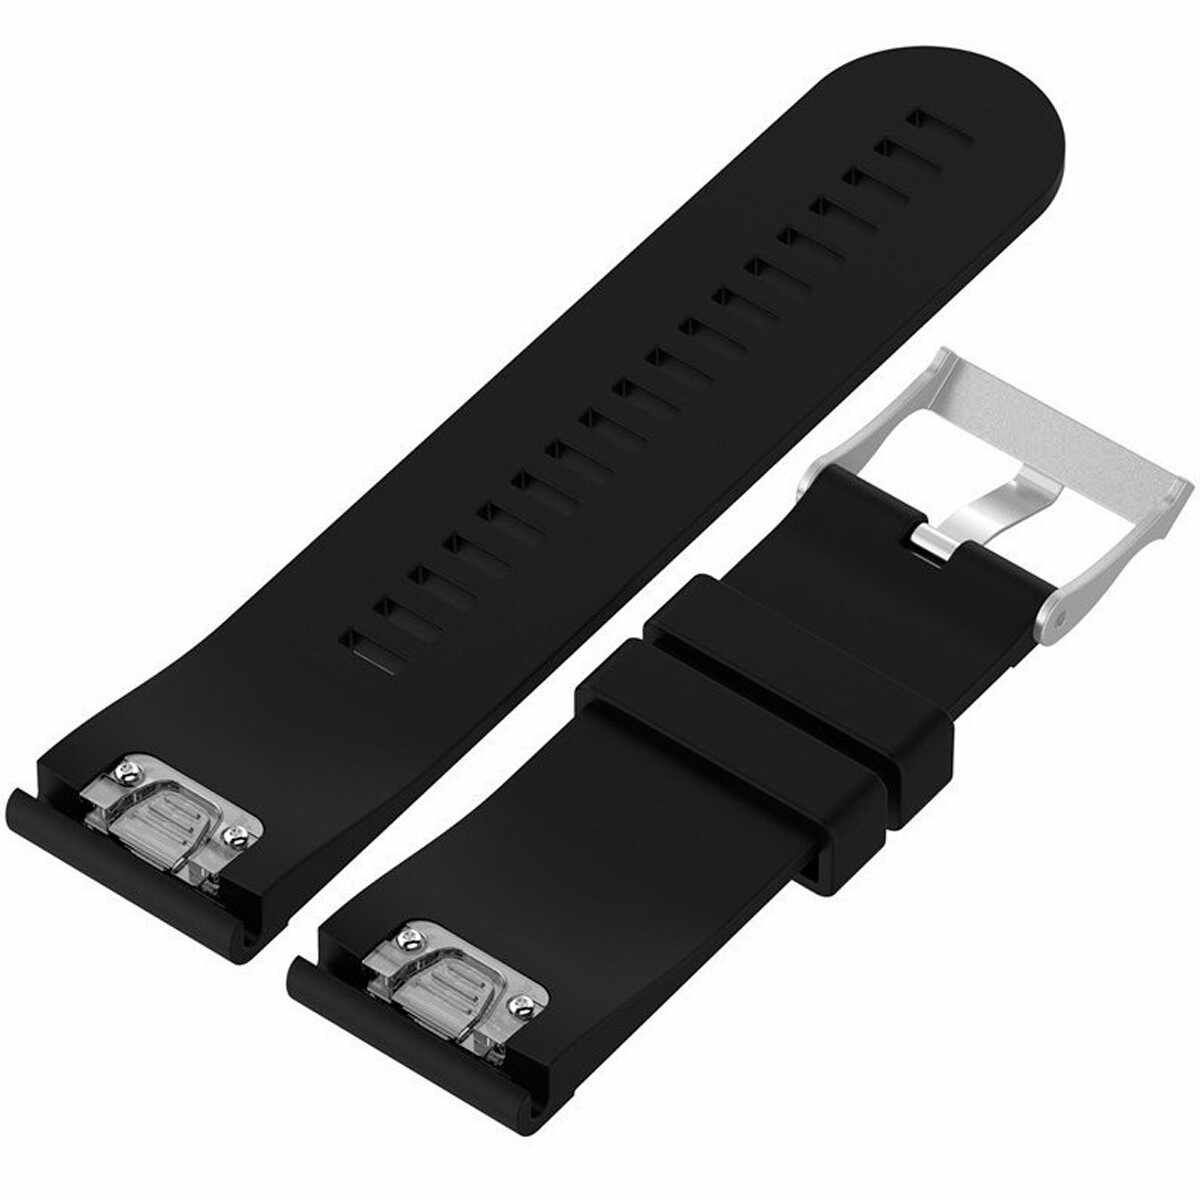 Curea ceas Smartwatch Garmin Fenix 3 / Fenix 5X, 26 mm Silicon iUni Black